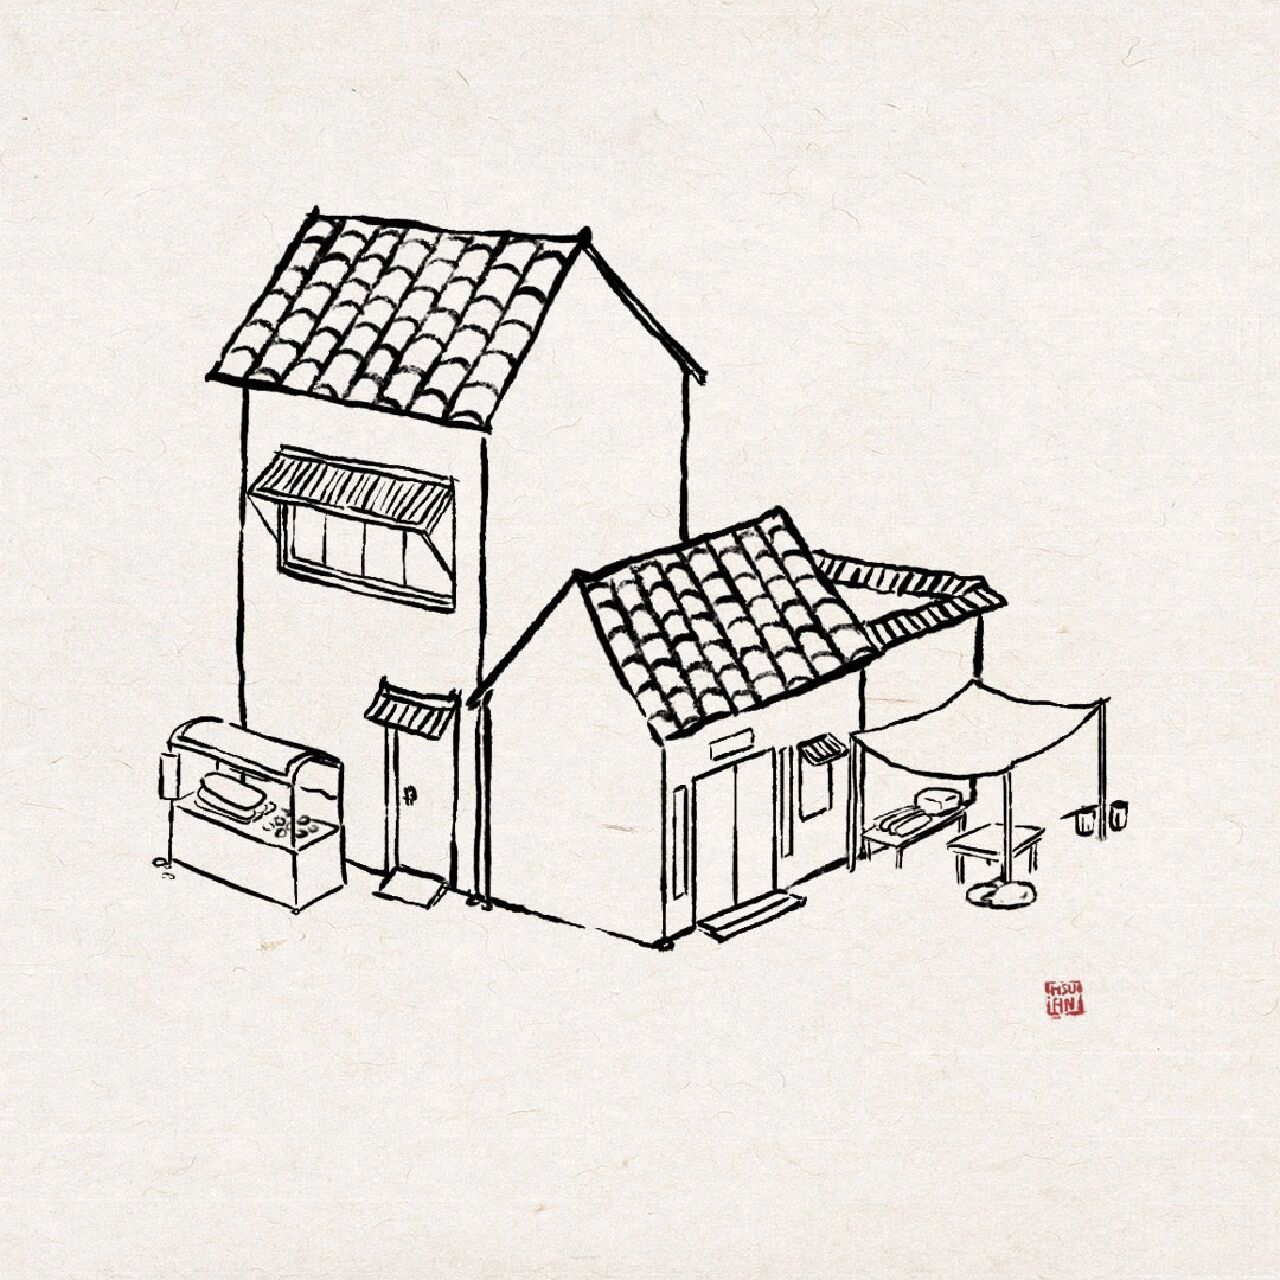 中国风建筑房子简笔画图片